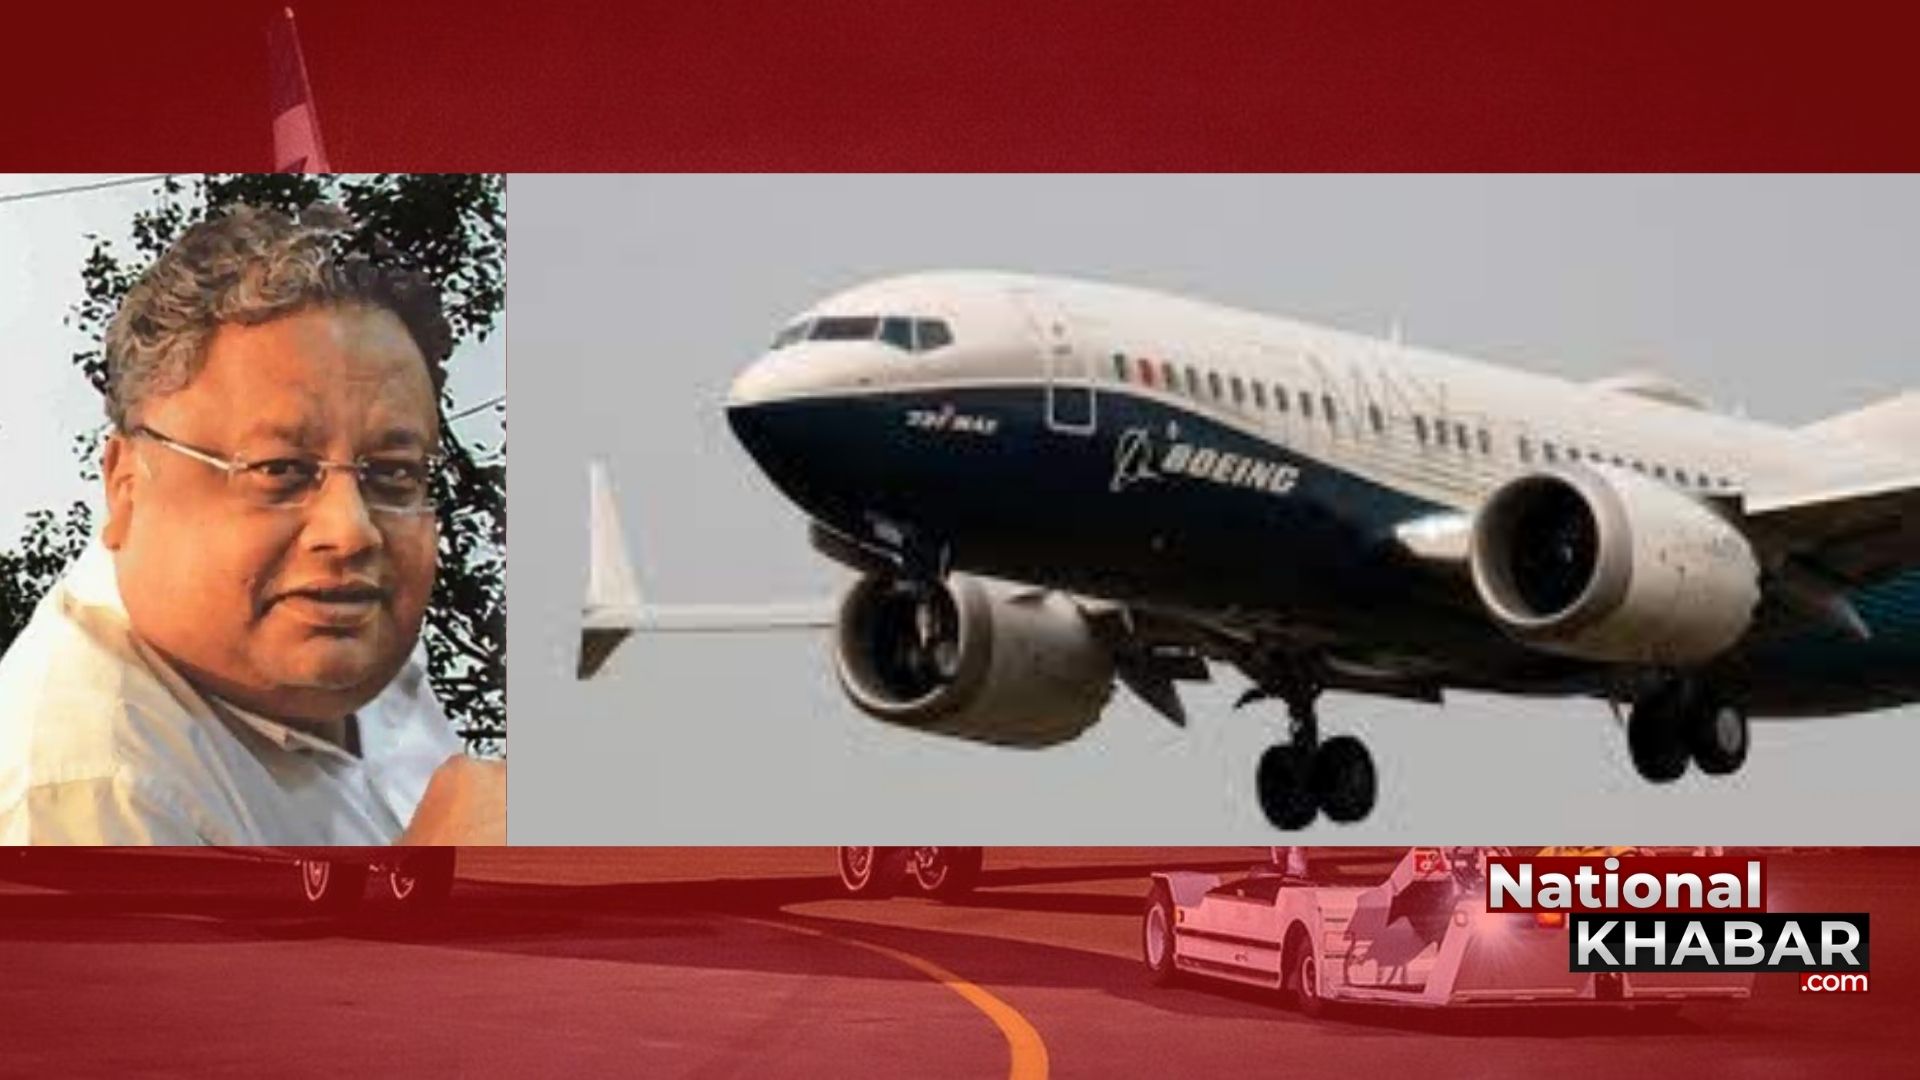 Akasa Air: राकेश झुनझुनवाला की एयरलाइन ने दिए 72 बोइंग 737 मैक्स जेट के ऑर्डर, यात्री अगले साल से कर पाएंगे सफर